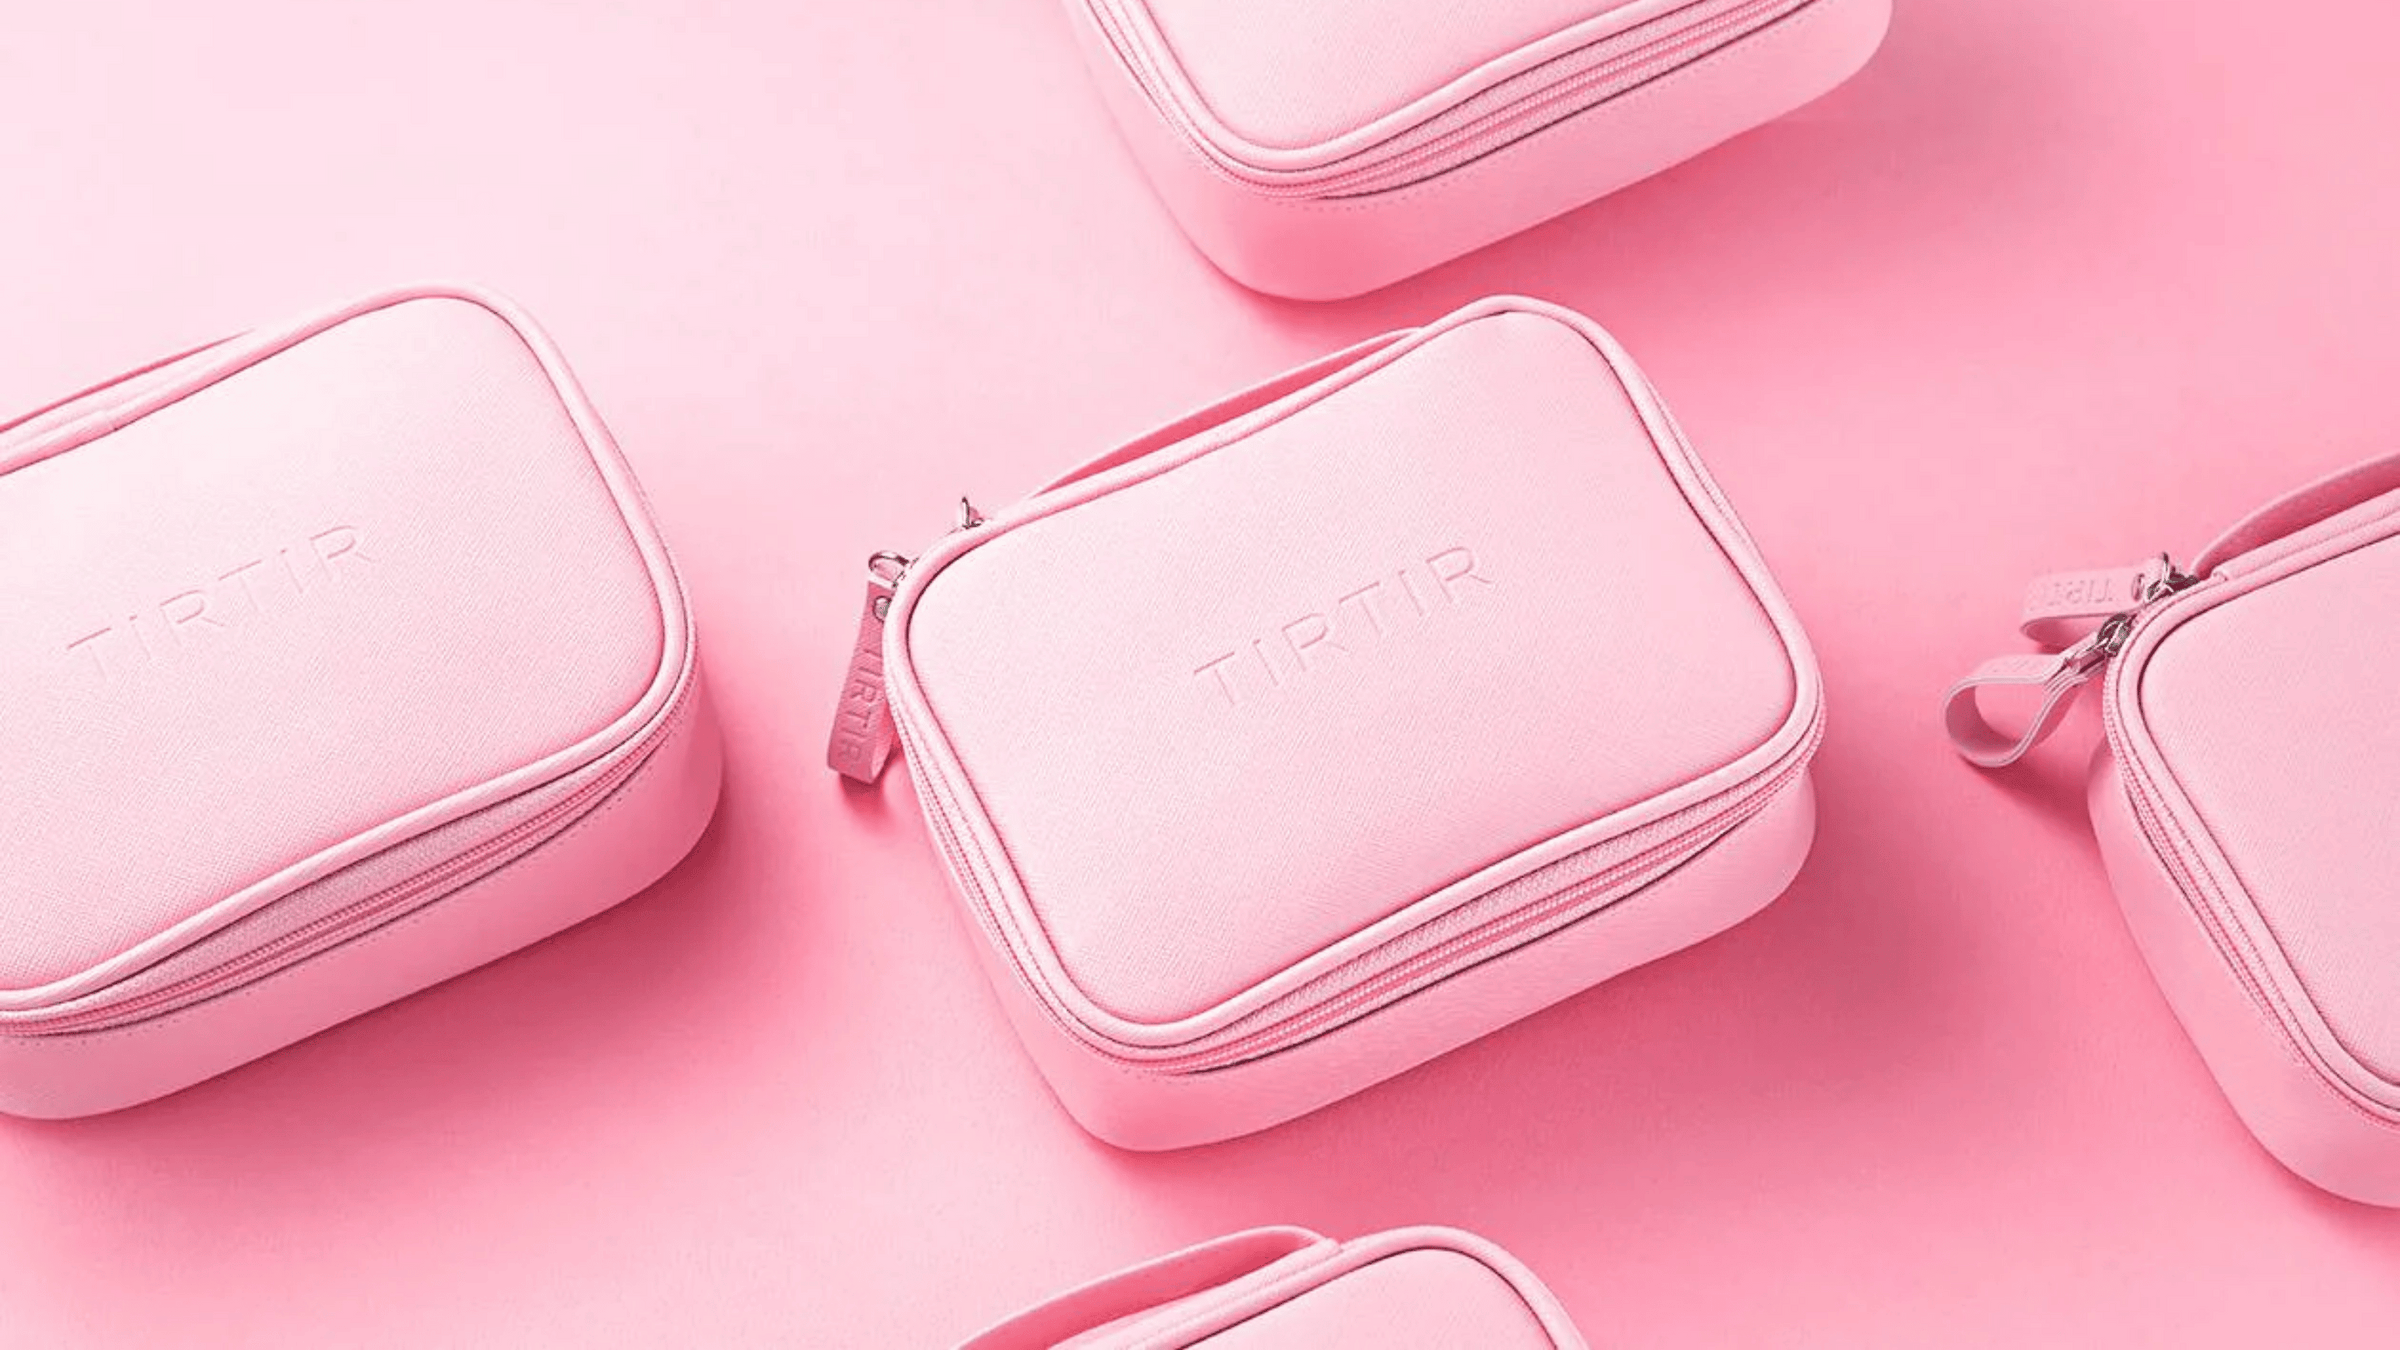 Bilden visar flera ljusrosa sminkväskor från märket TIRTIR. Deras enhetliga färg och stilrena design framhävs mot en mjukt rosa bakgrund, vilket ger en mycket sofistikerad och minimalistisk presentation. 